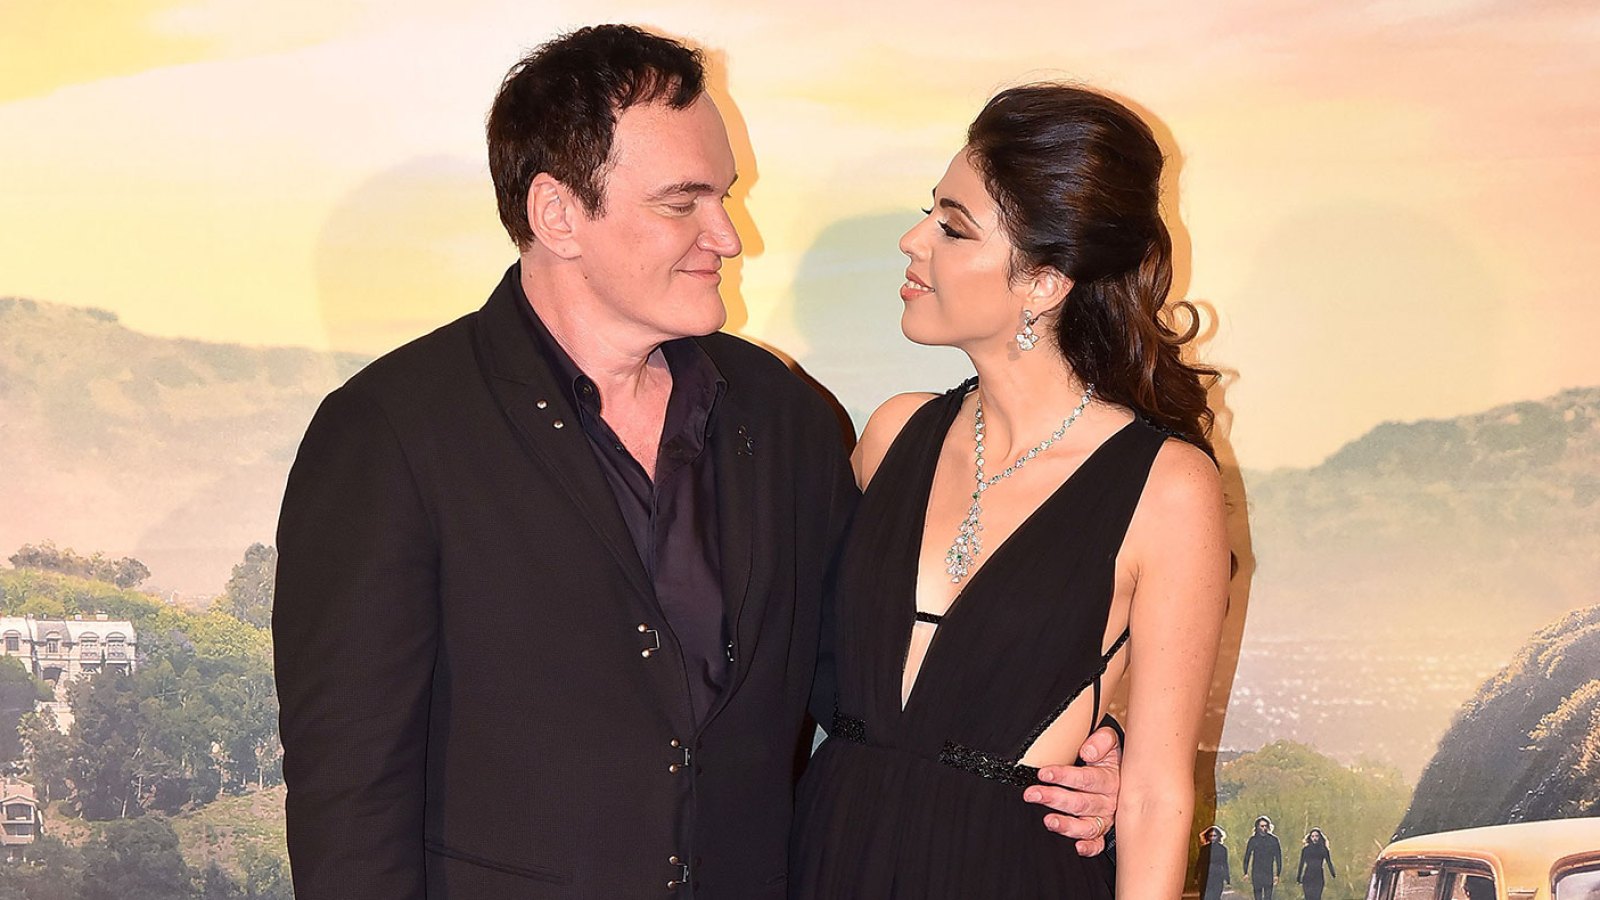 Quentin Tarantino, wife Daniella expecting second child 